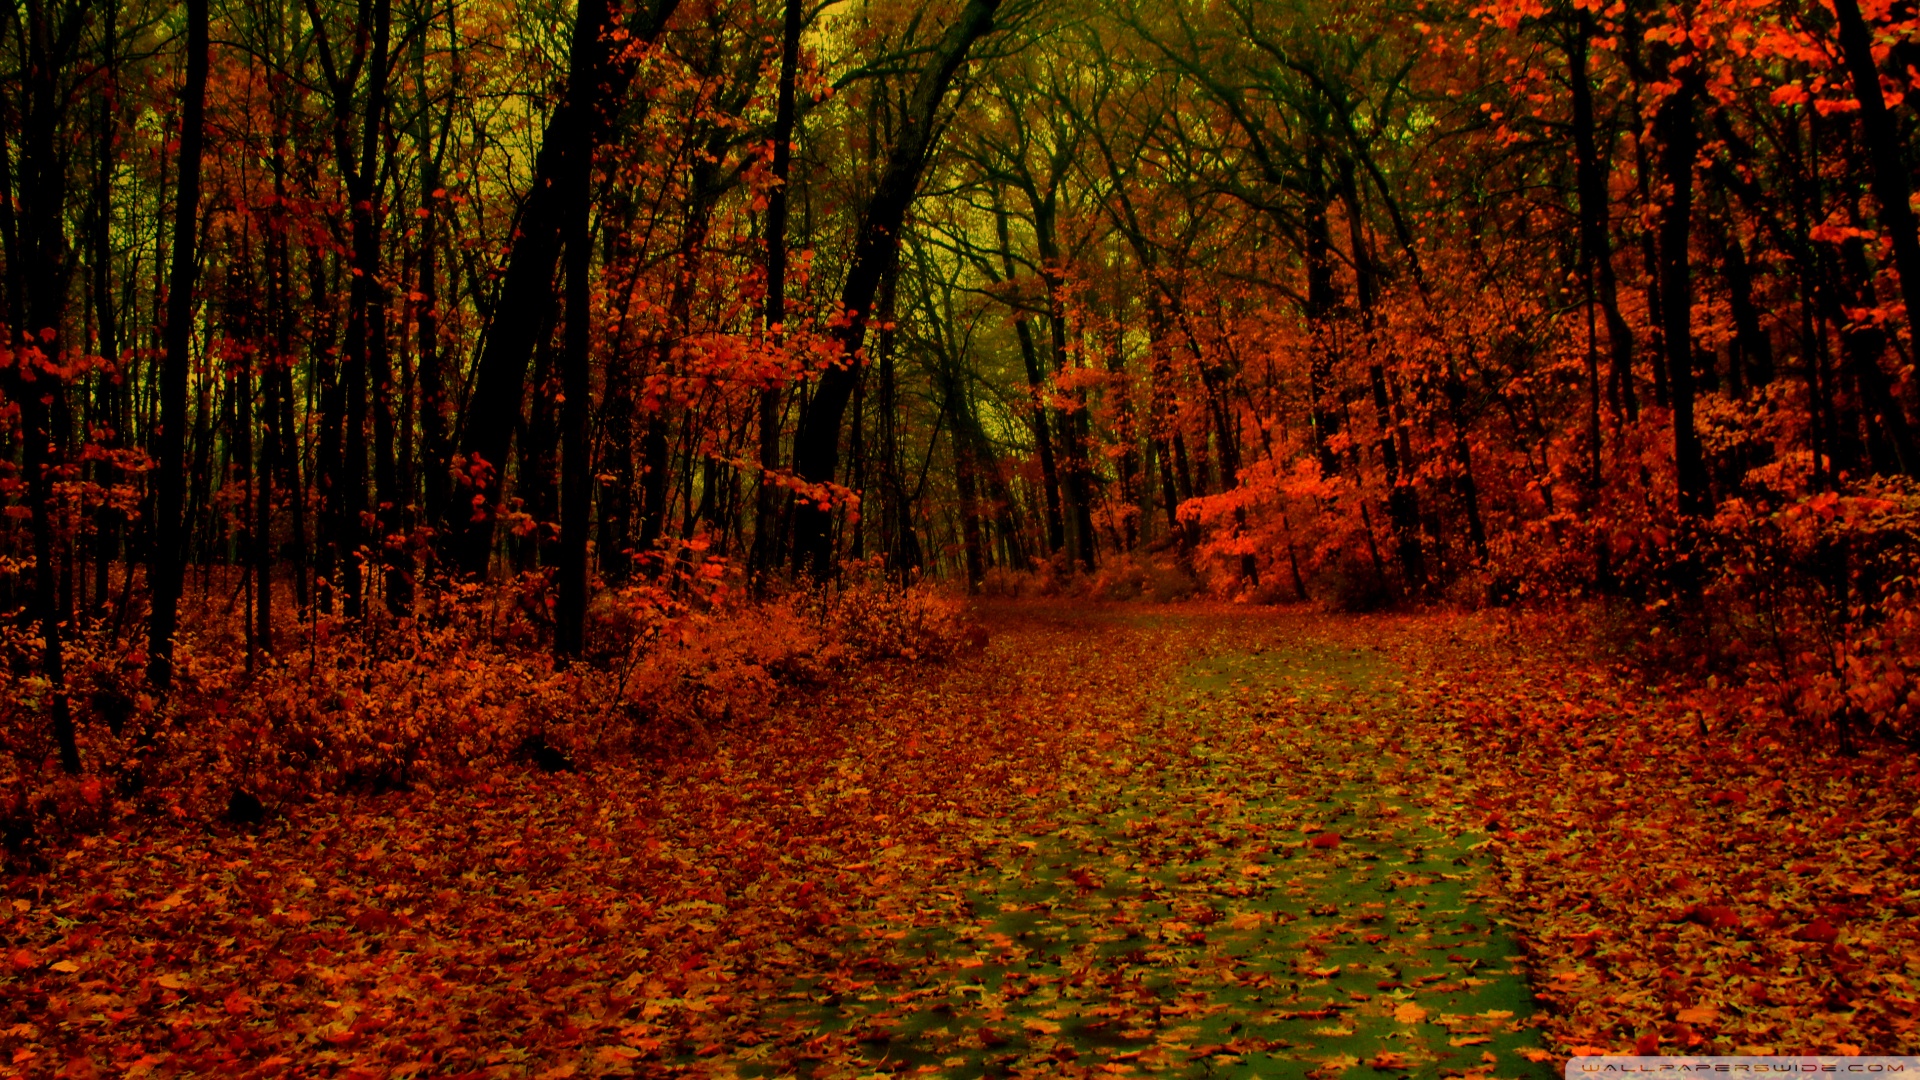 Autumn Scenes Desktop Wallpapers